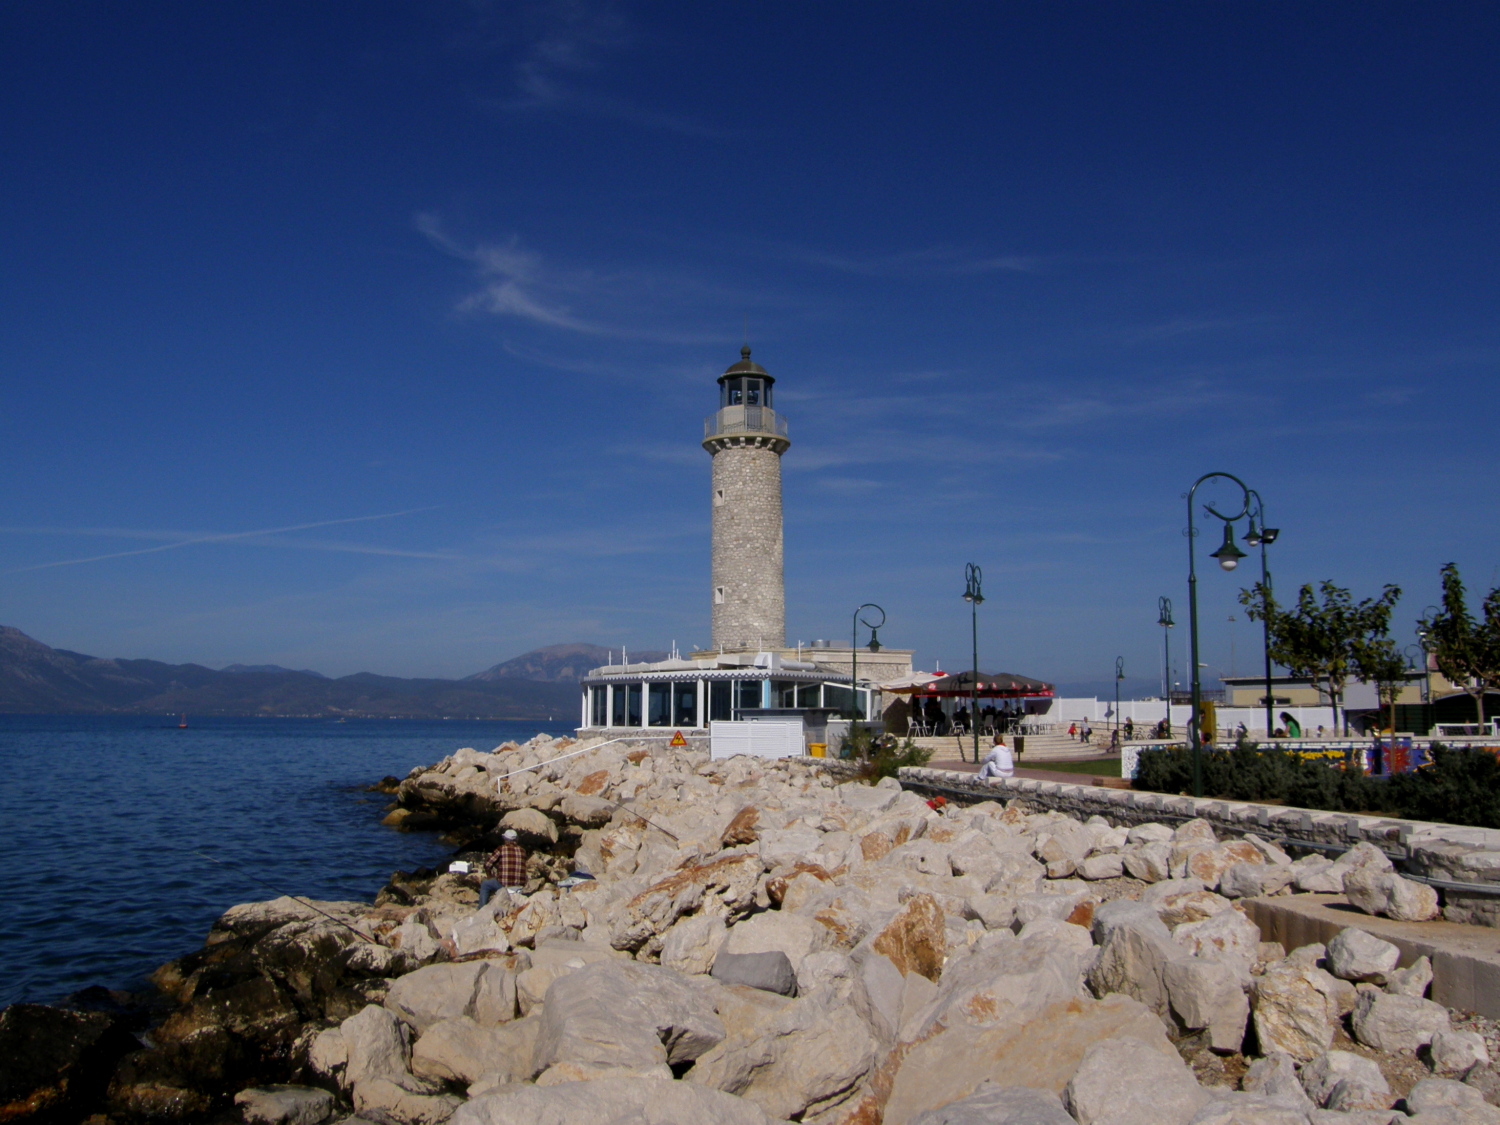 patras port dummy lighthouse 031112